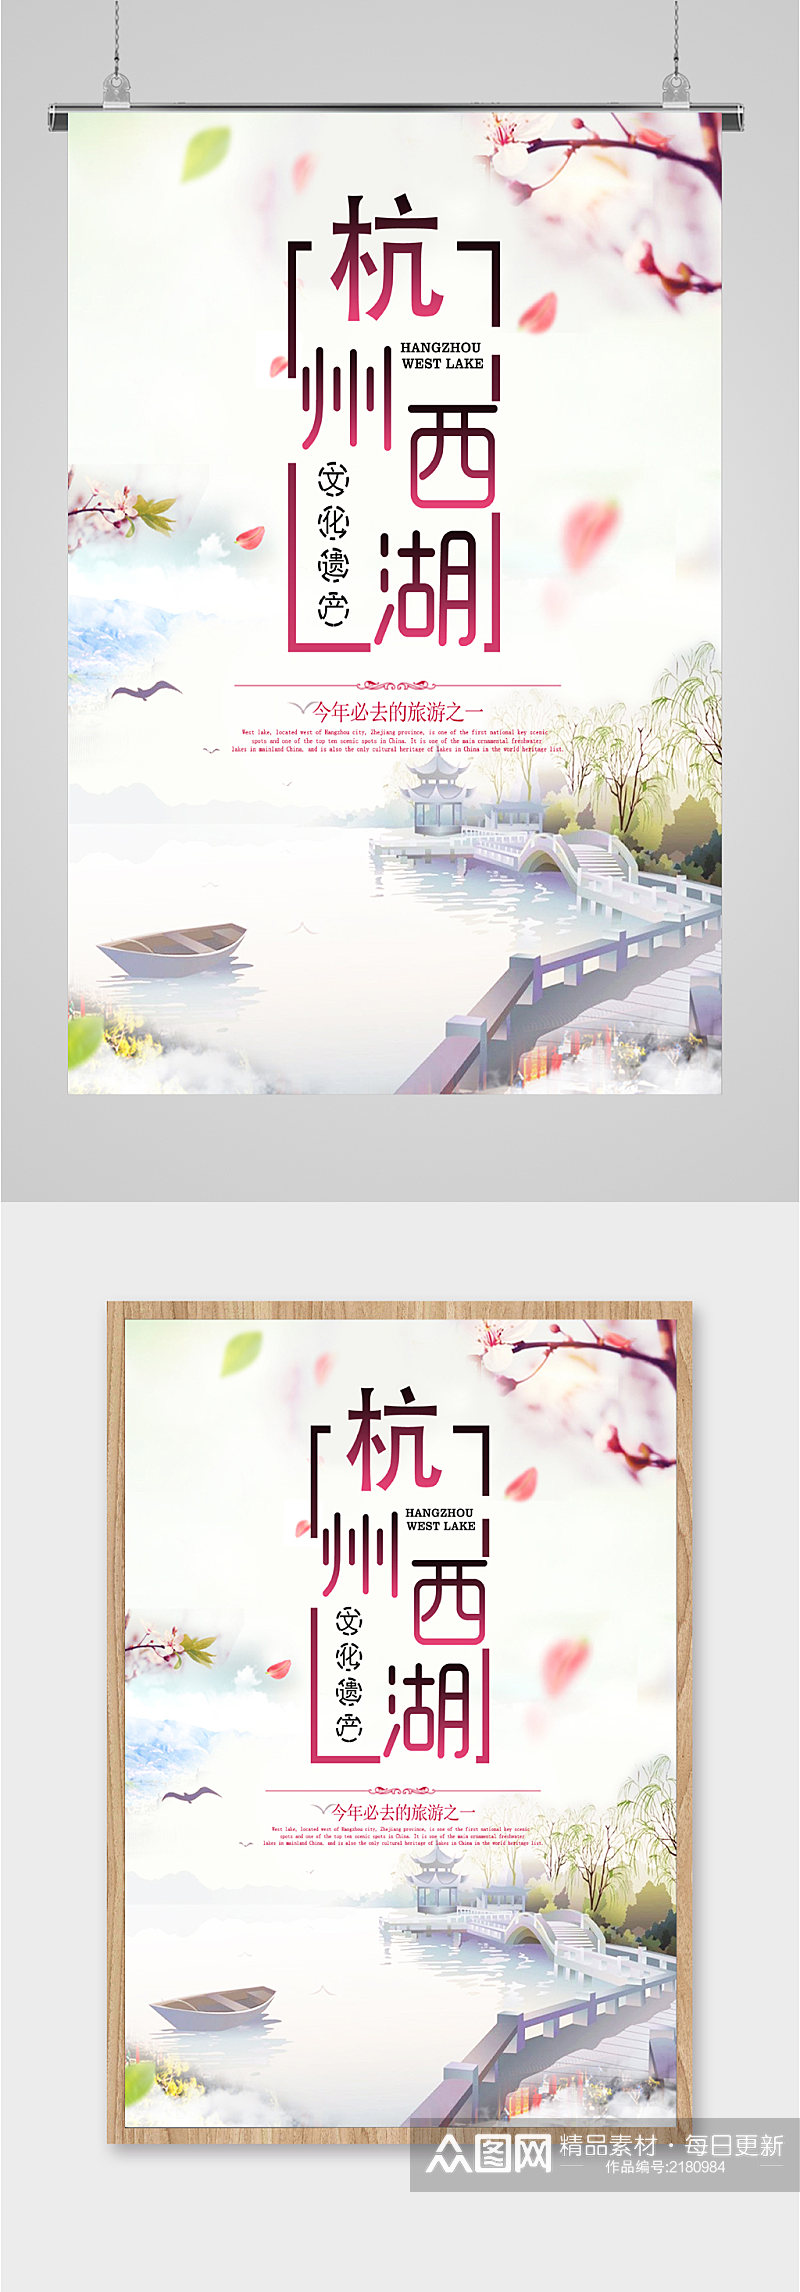 文化遗产杭州西湖旅游海报素材